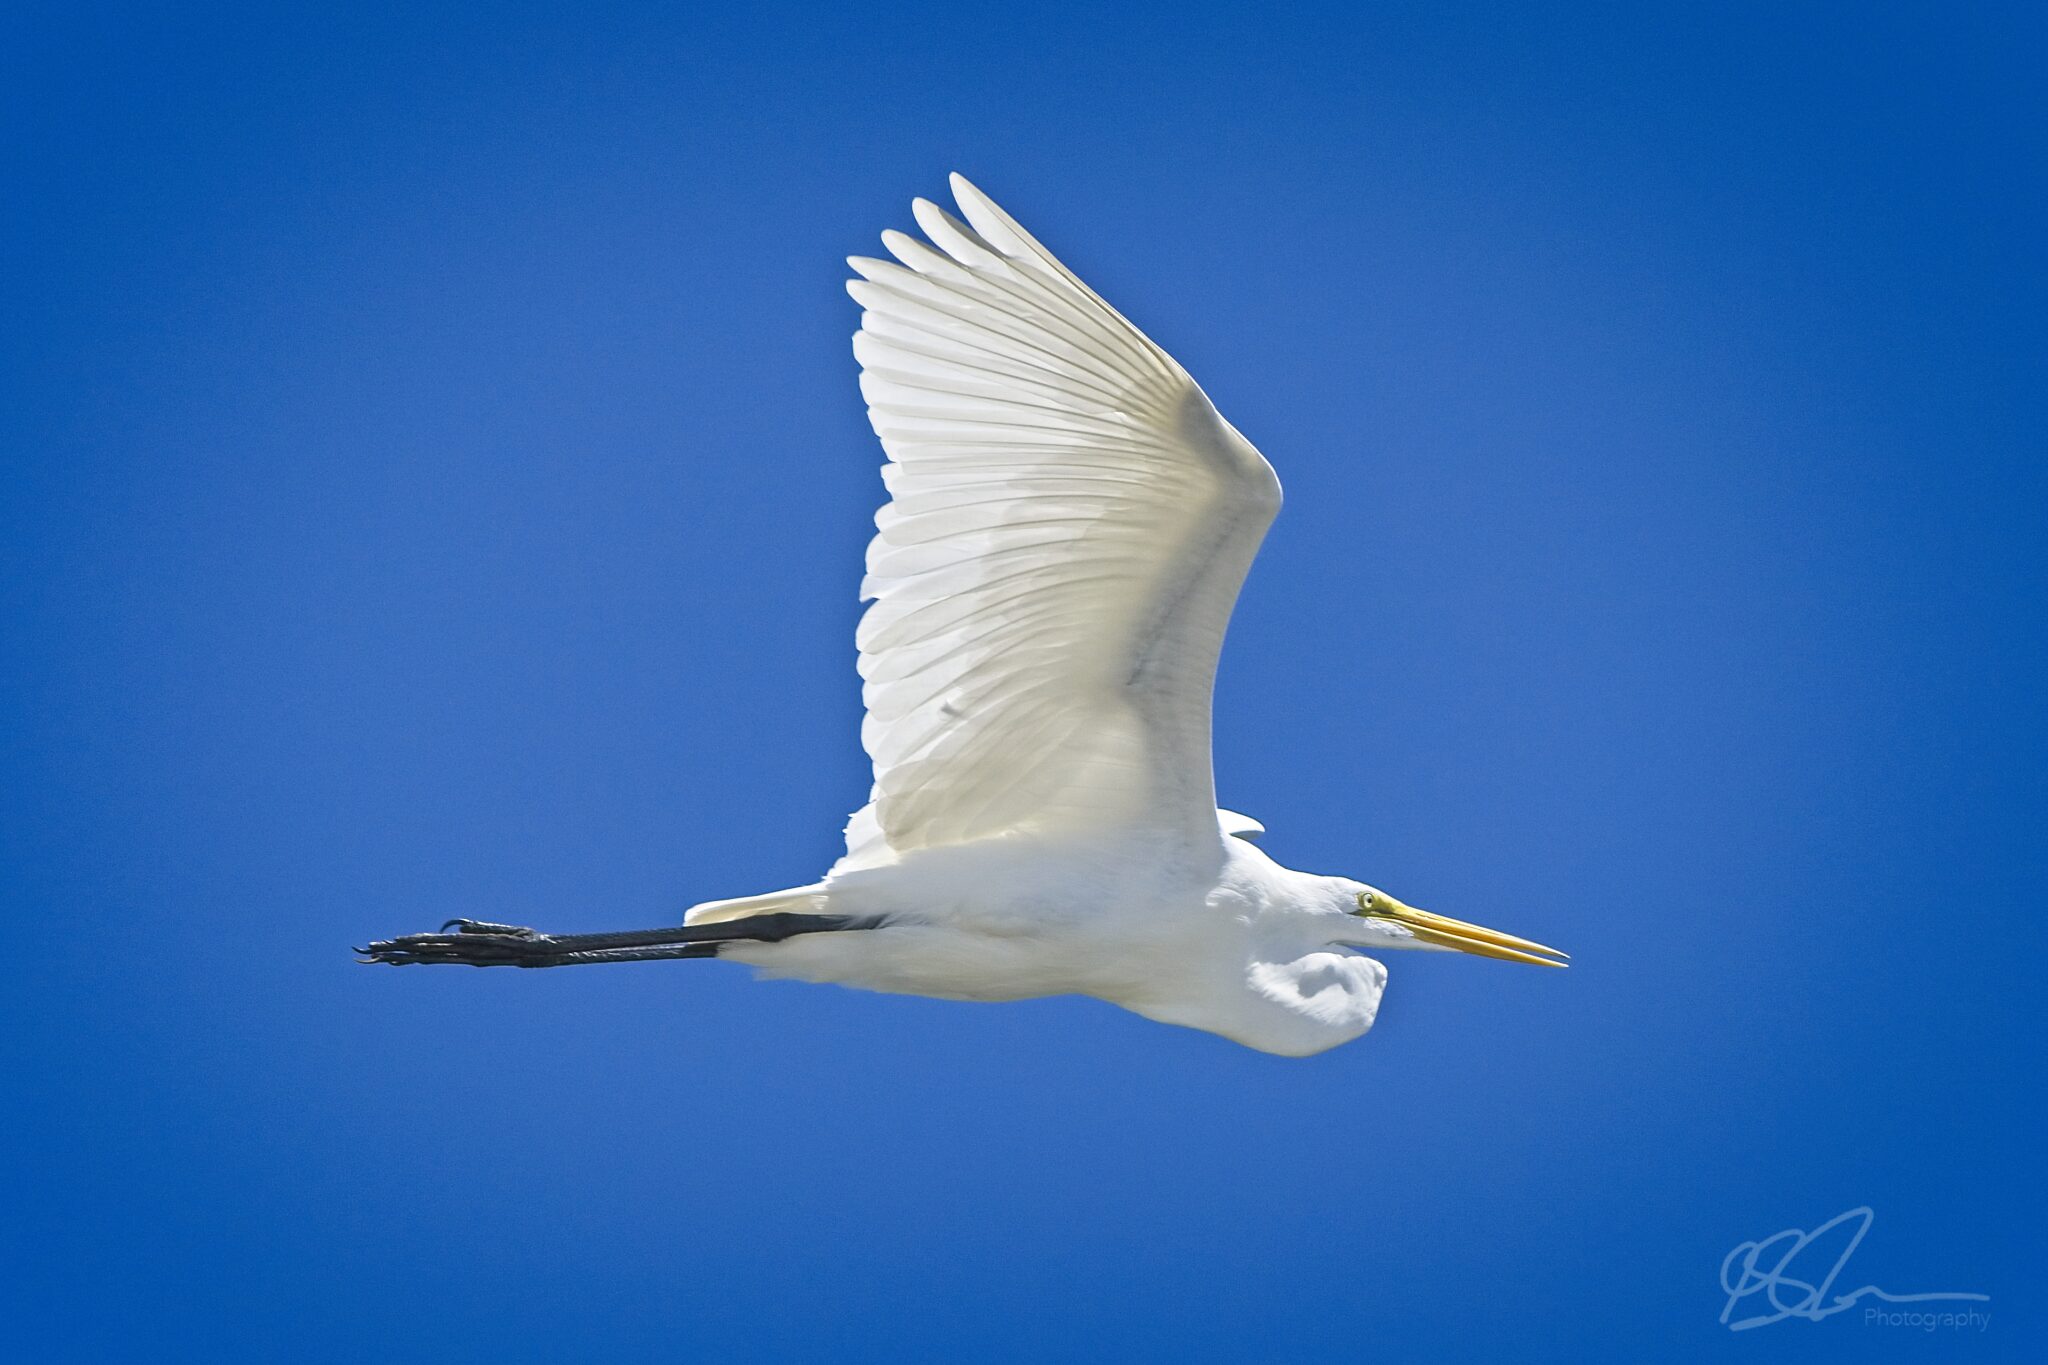 Great Egret soaring above